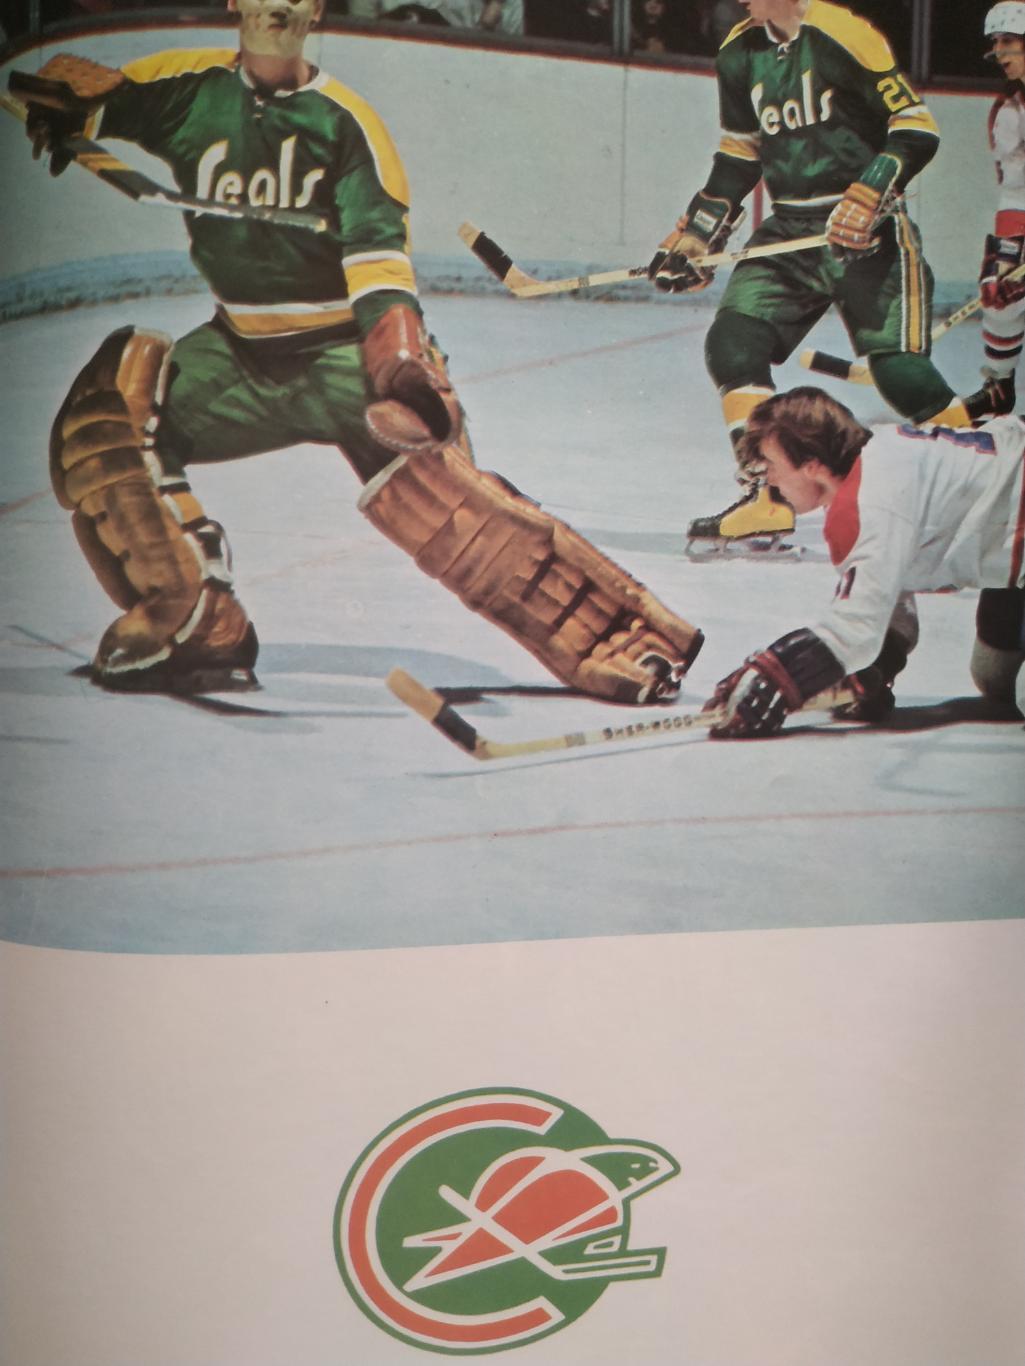 ХОККЕЙ ПРОГРАММА АЛЬБОМ КАЛИФОРНИЯ НХЛ NHL 1971 NOV.16 CALIFORNIA PROGRAM 6